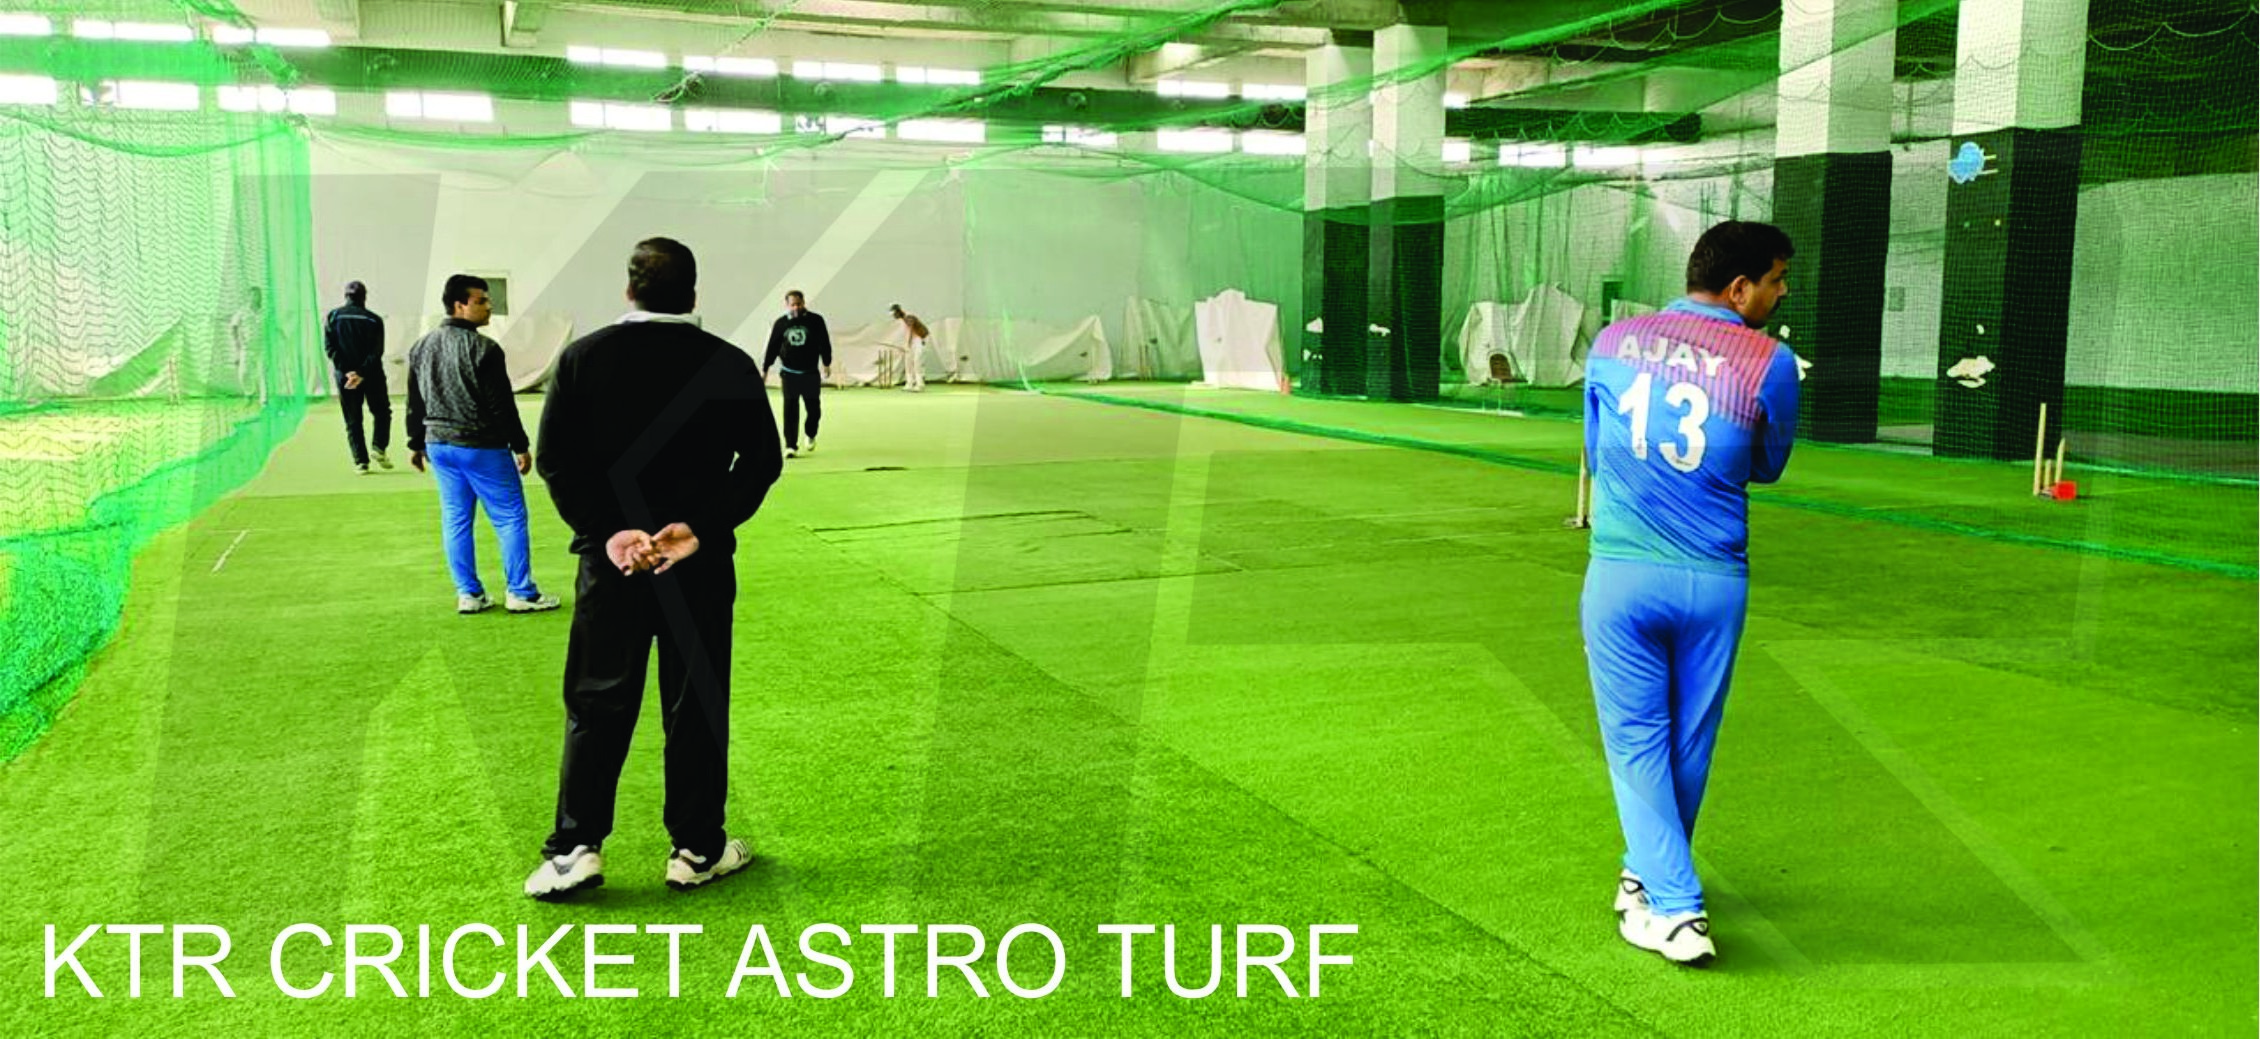 KTR METCO Cricket Astro Turf